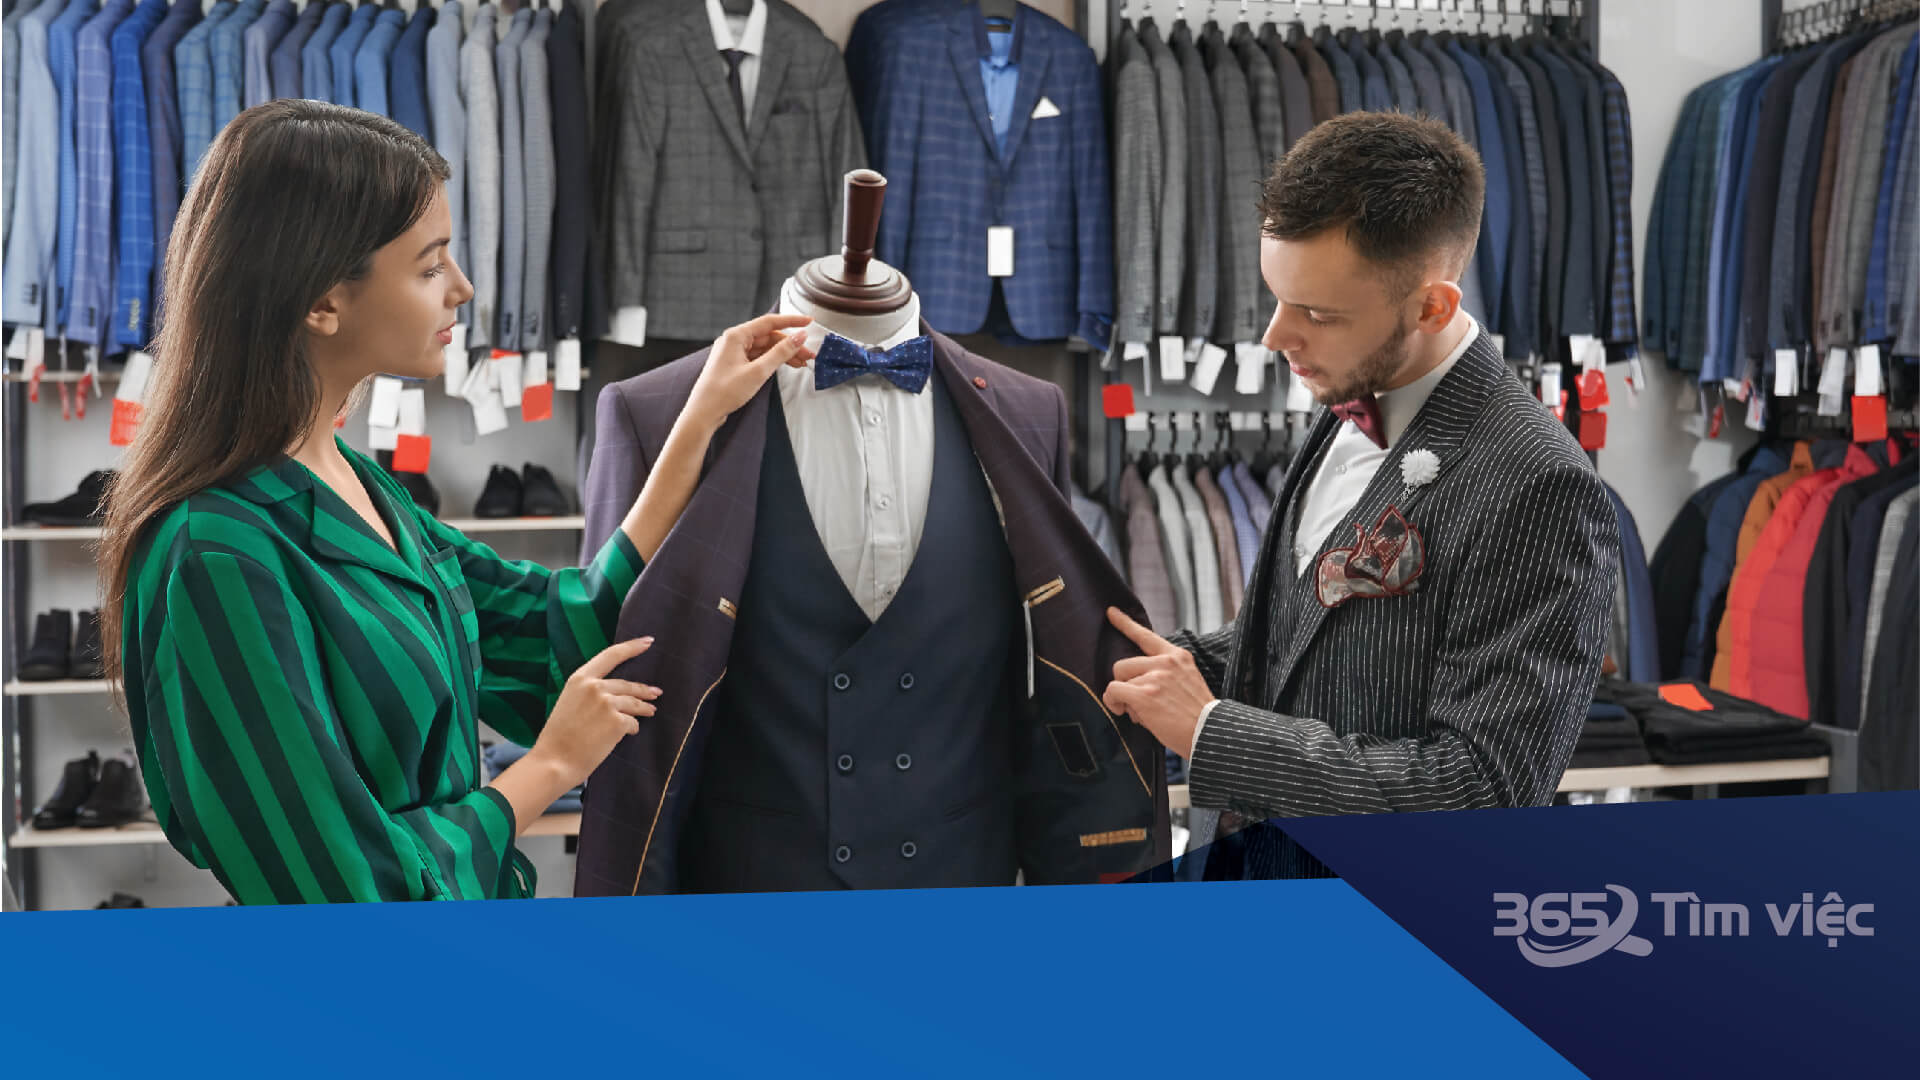 Mức lương của nhân viên bán hàng quần áo là bao nhiêu? 